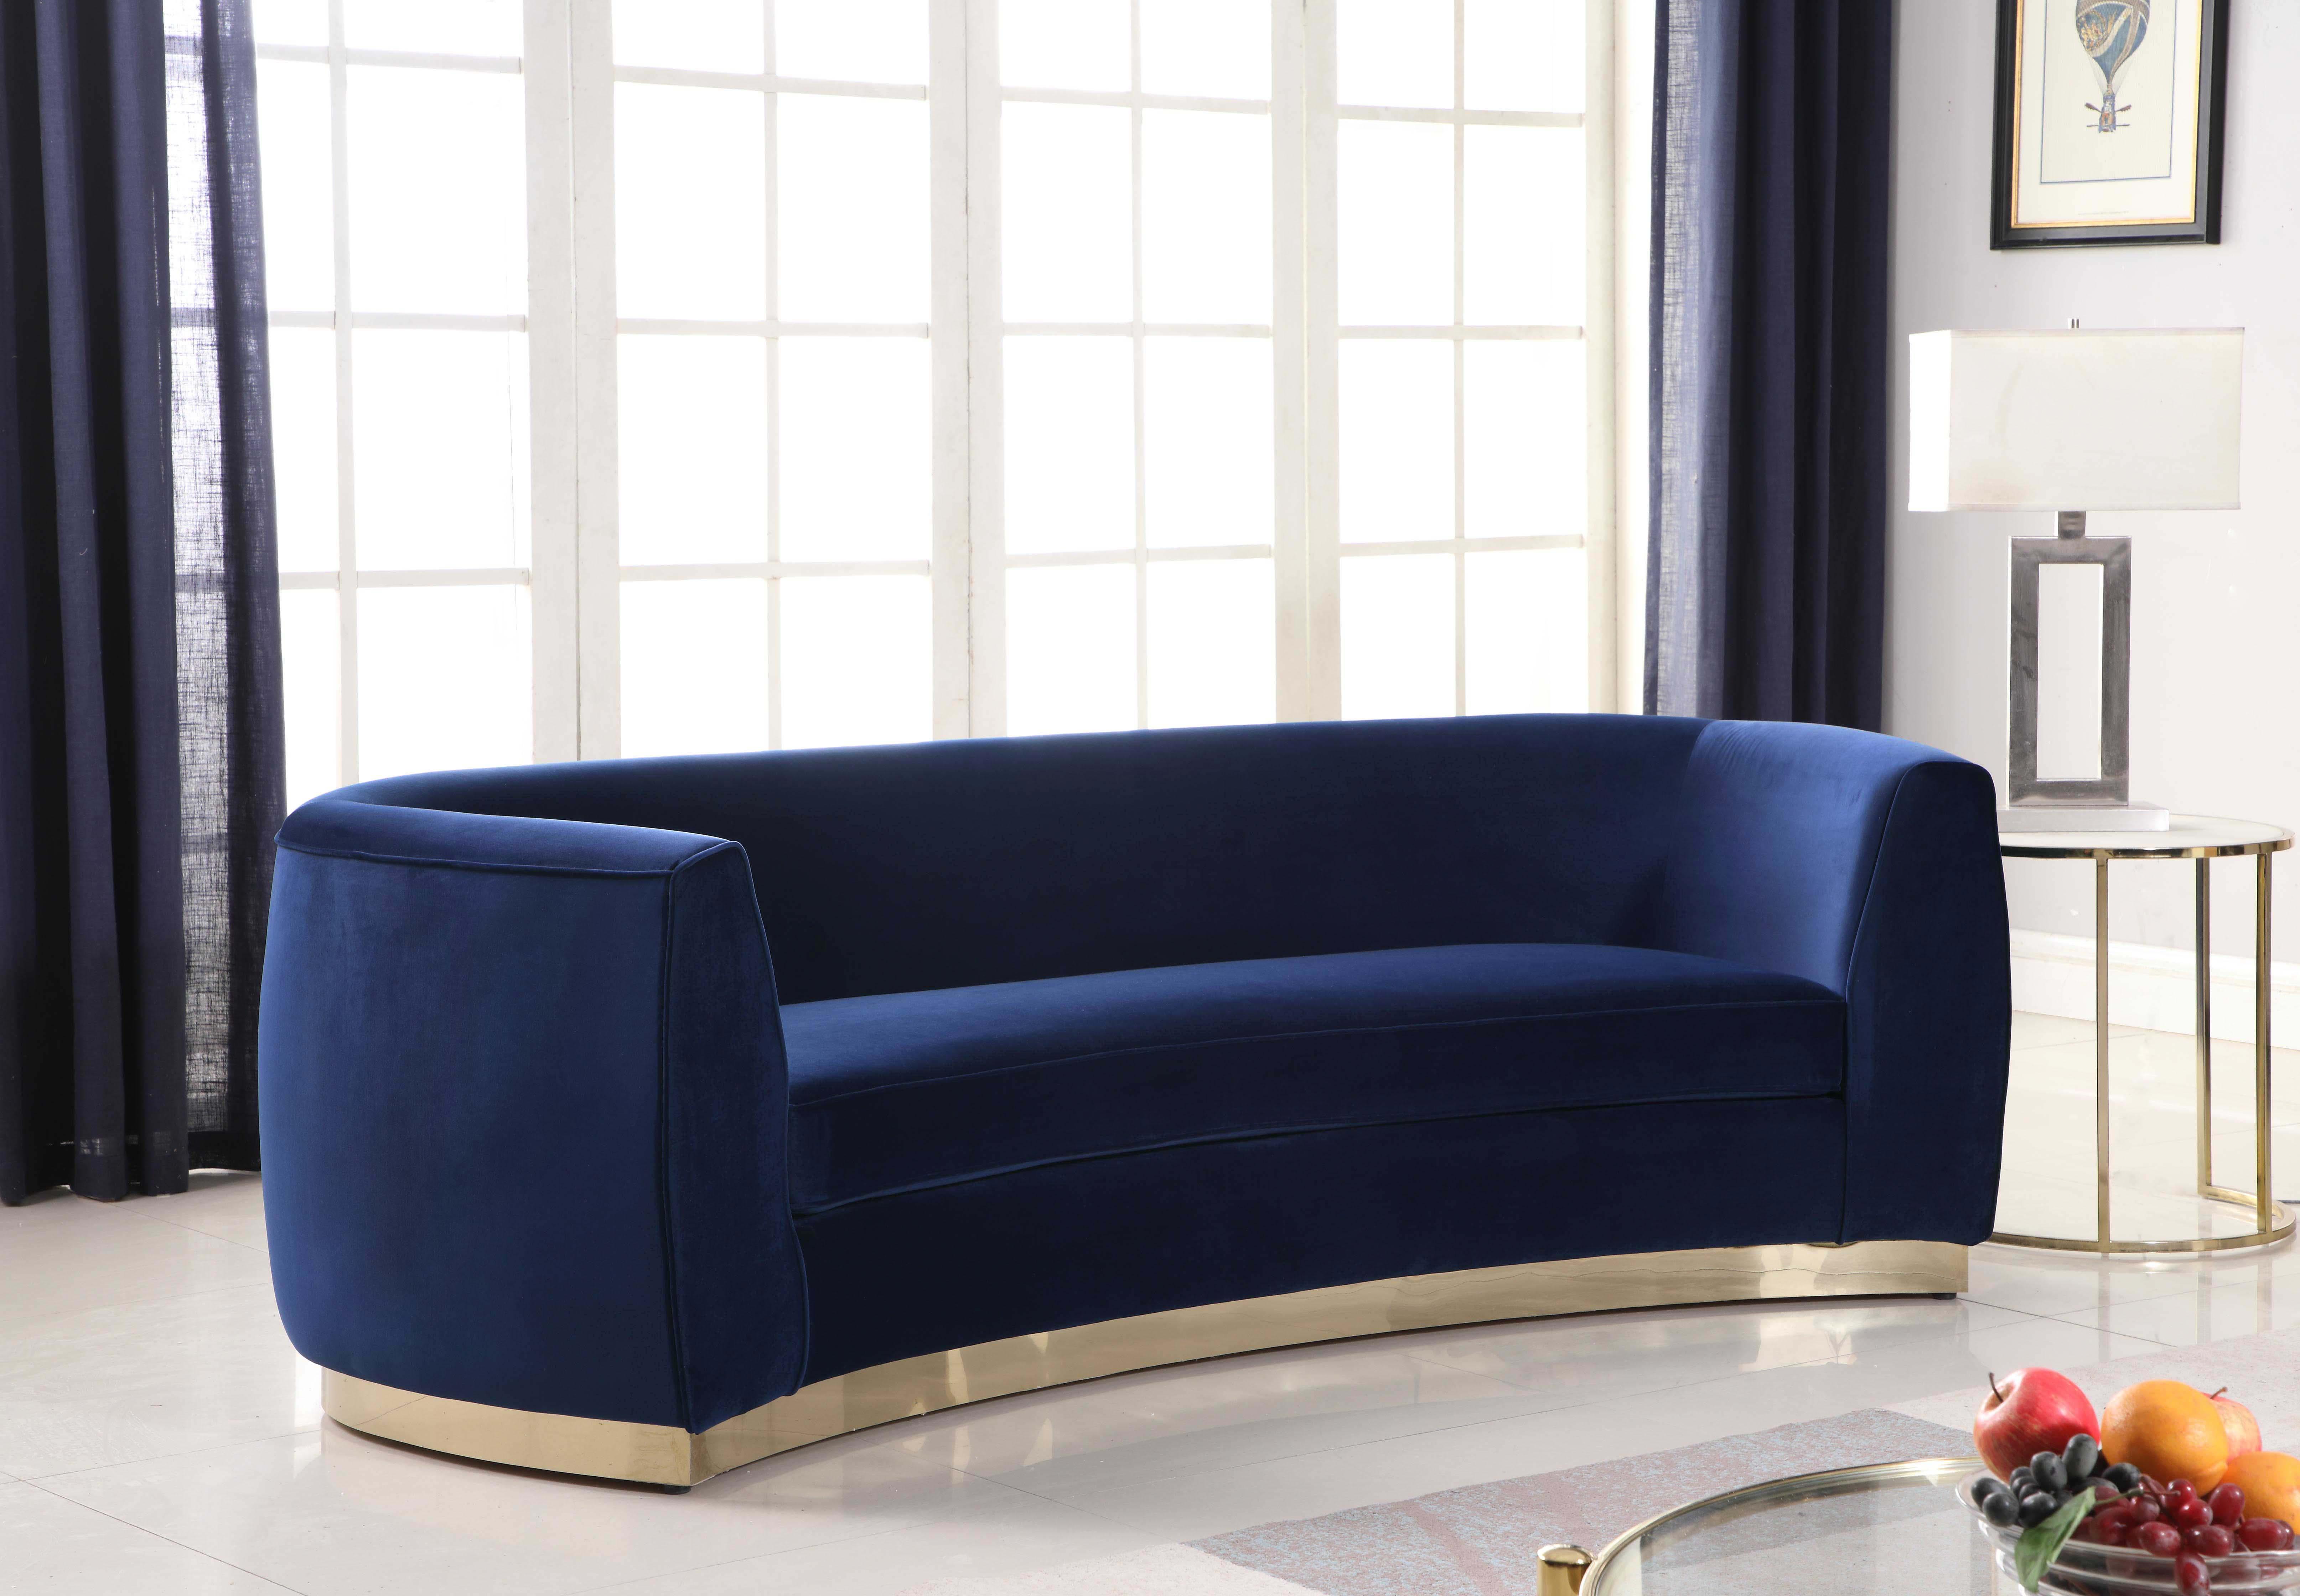 

    
Glam Navy Velvet Sofa Set 2Pcs Julian 620Navy-S Meridian Modern Contemporary
